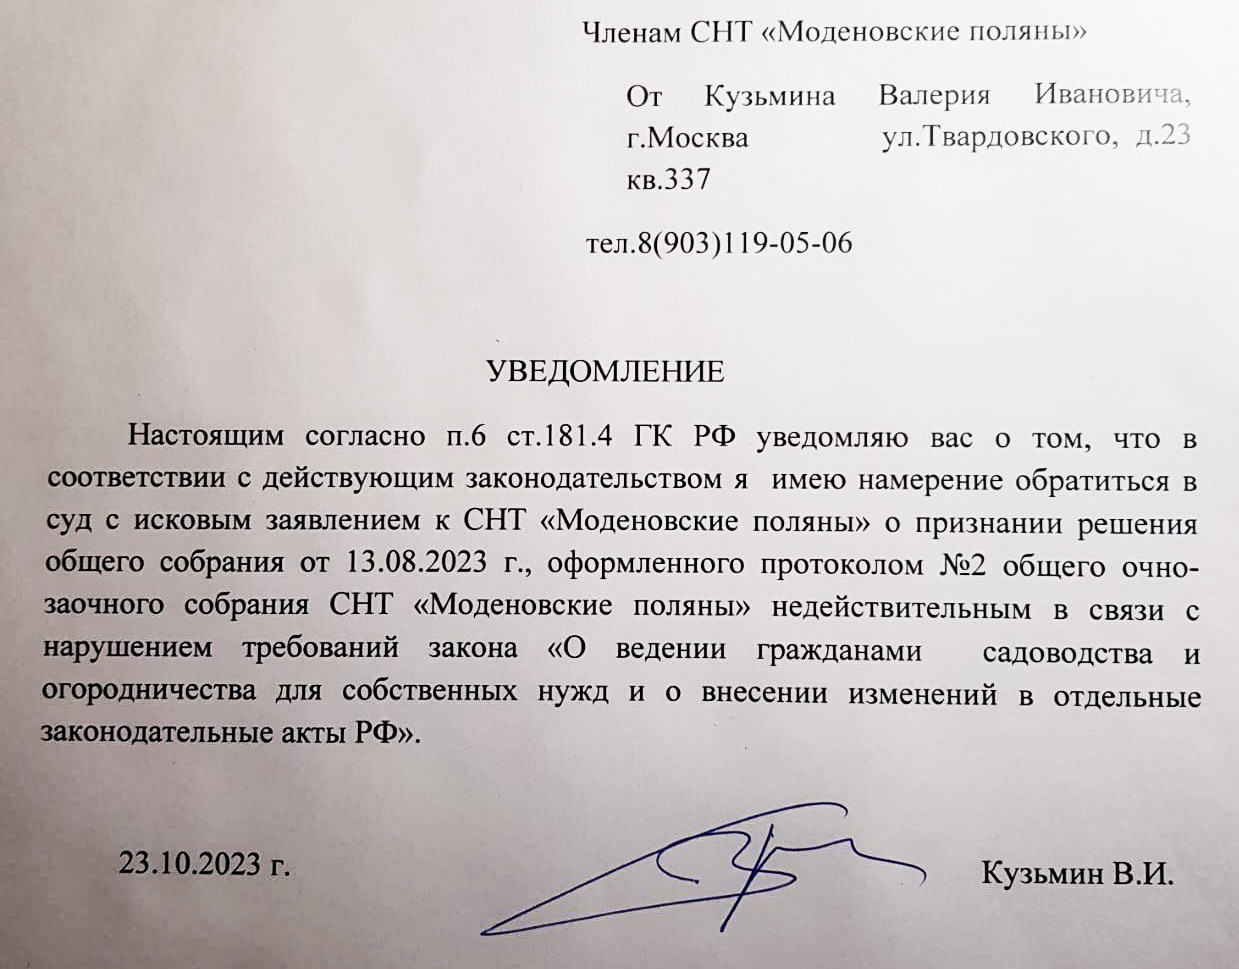 Уведомление Кузьмина В.И. членам СНТ о его обращении в суд